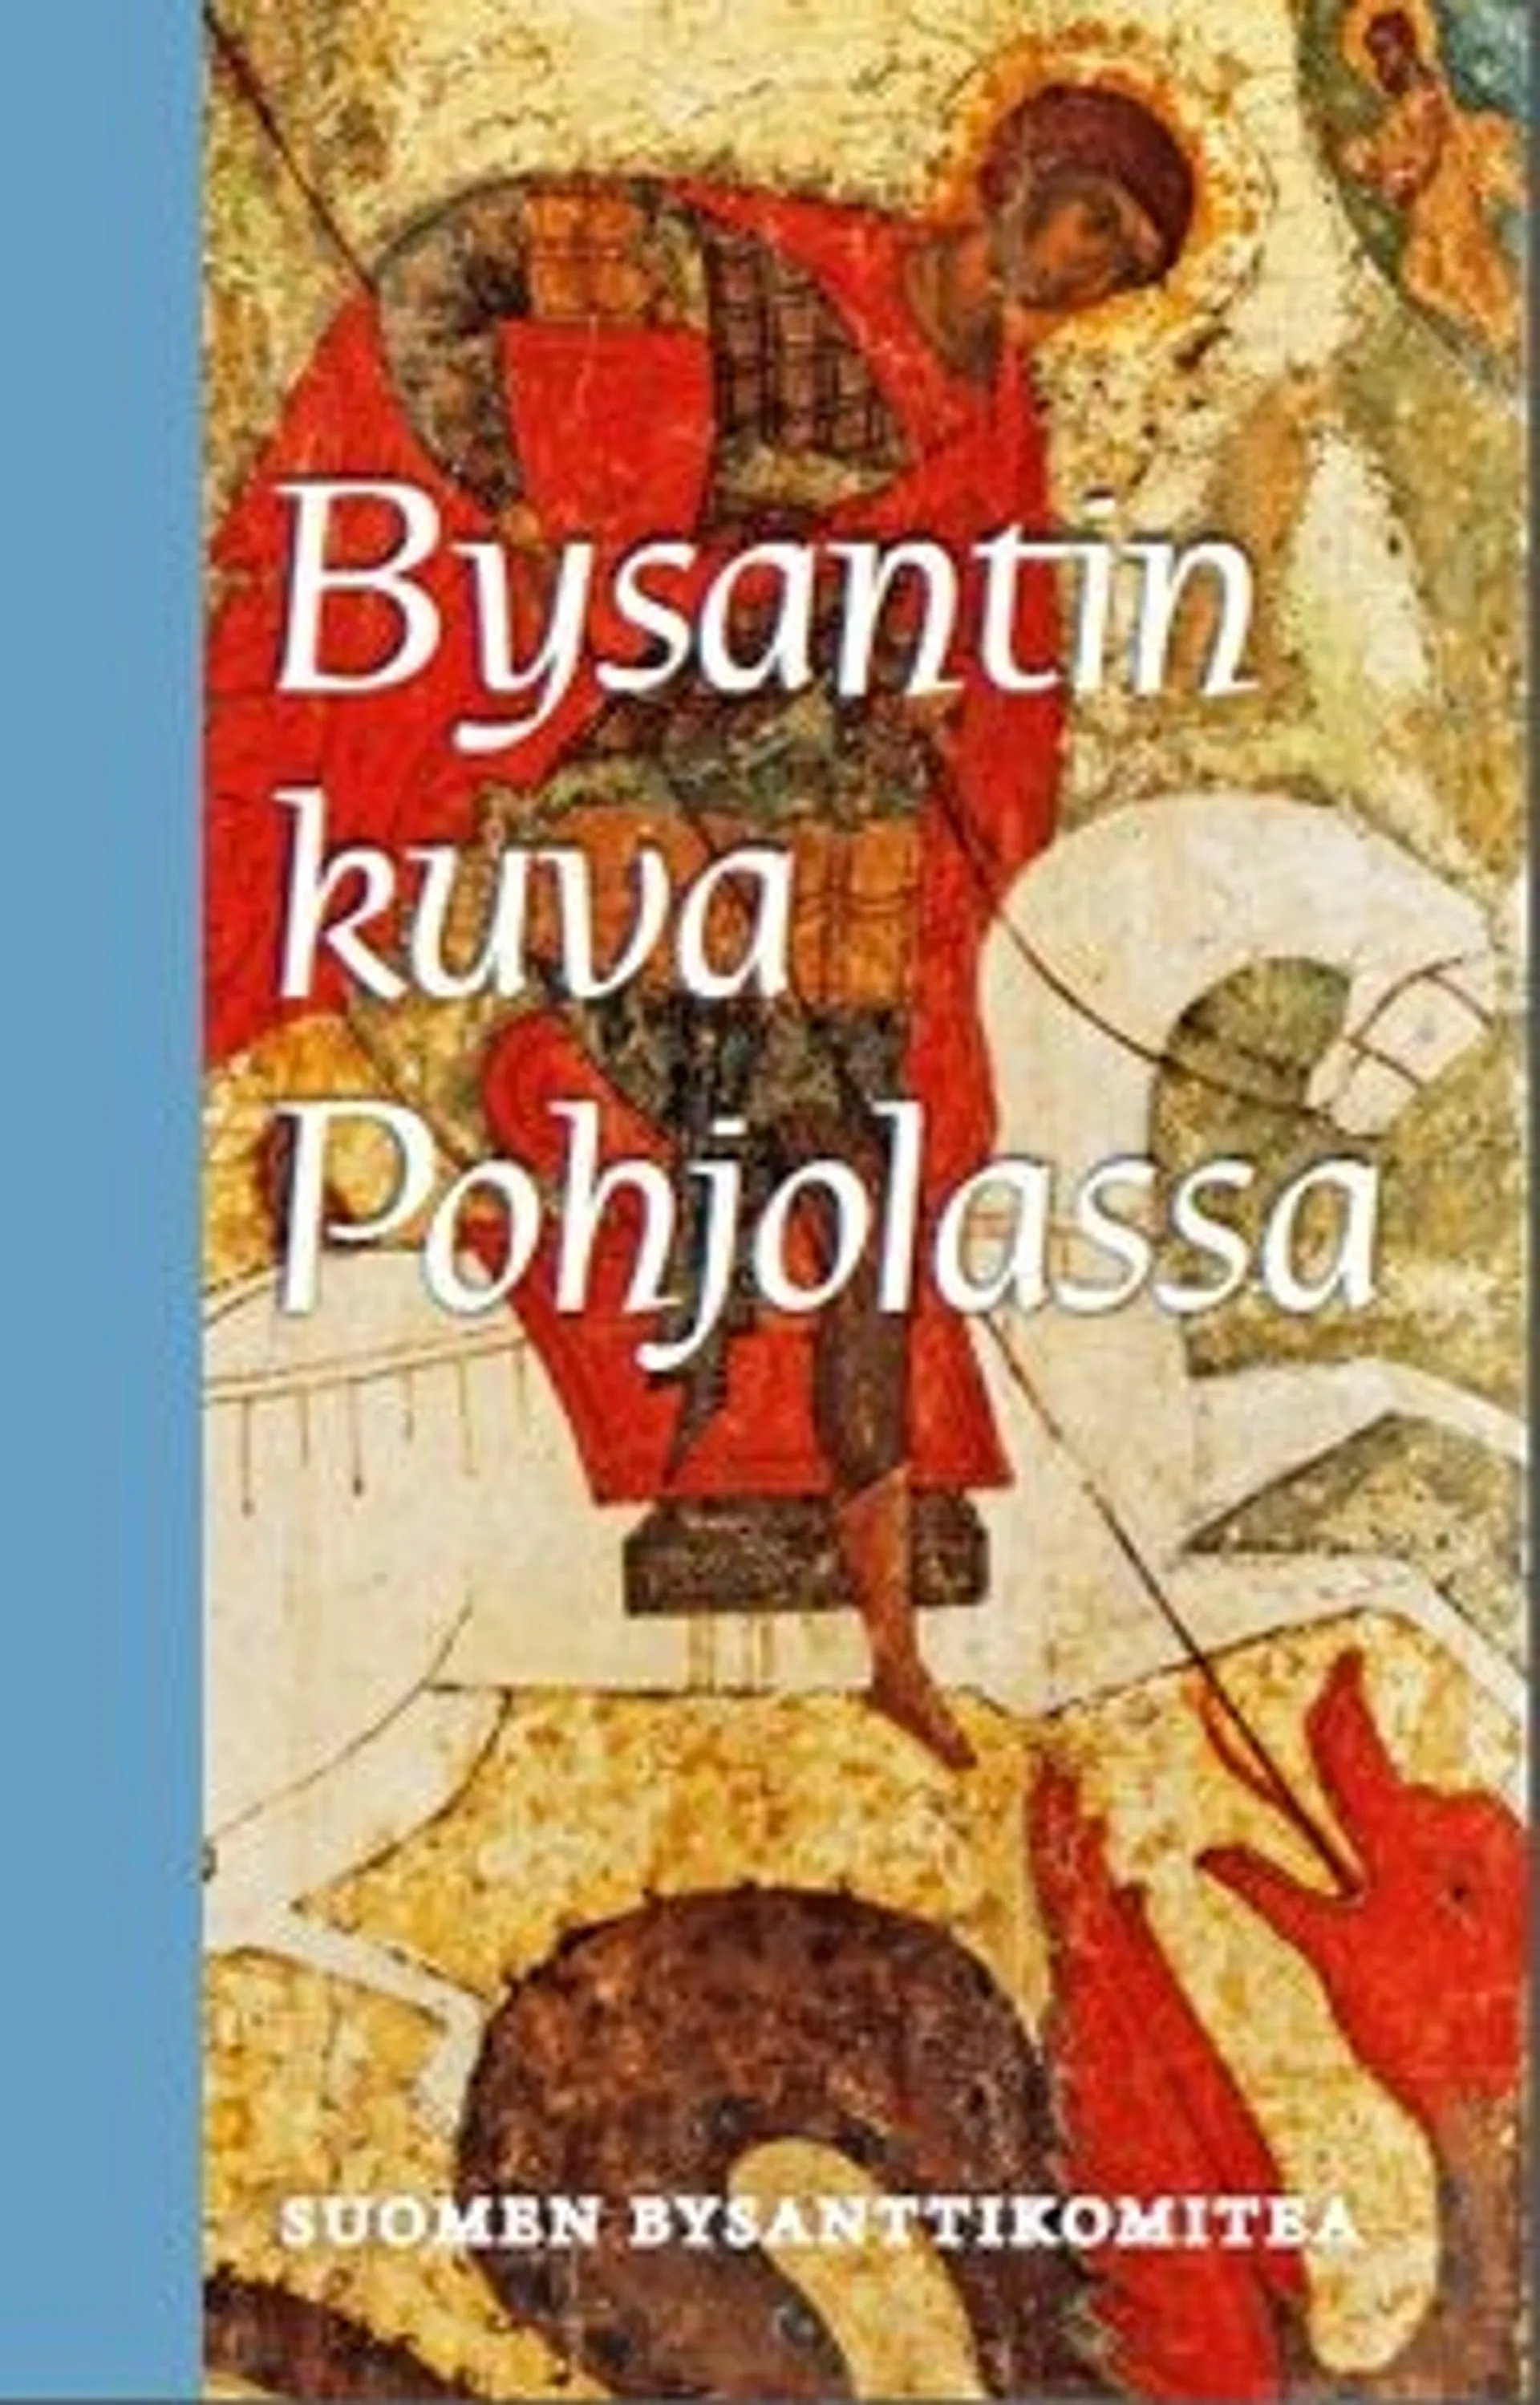 Bysantin kuva Pohjolassa